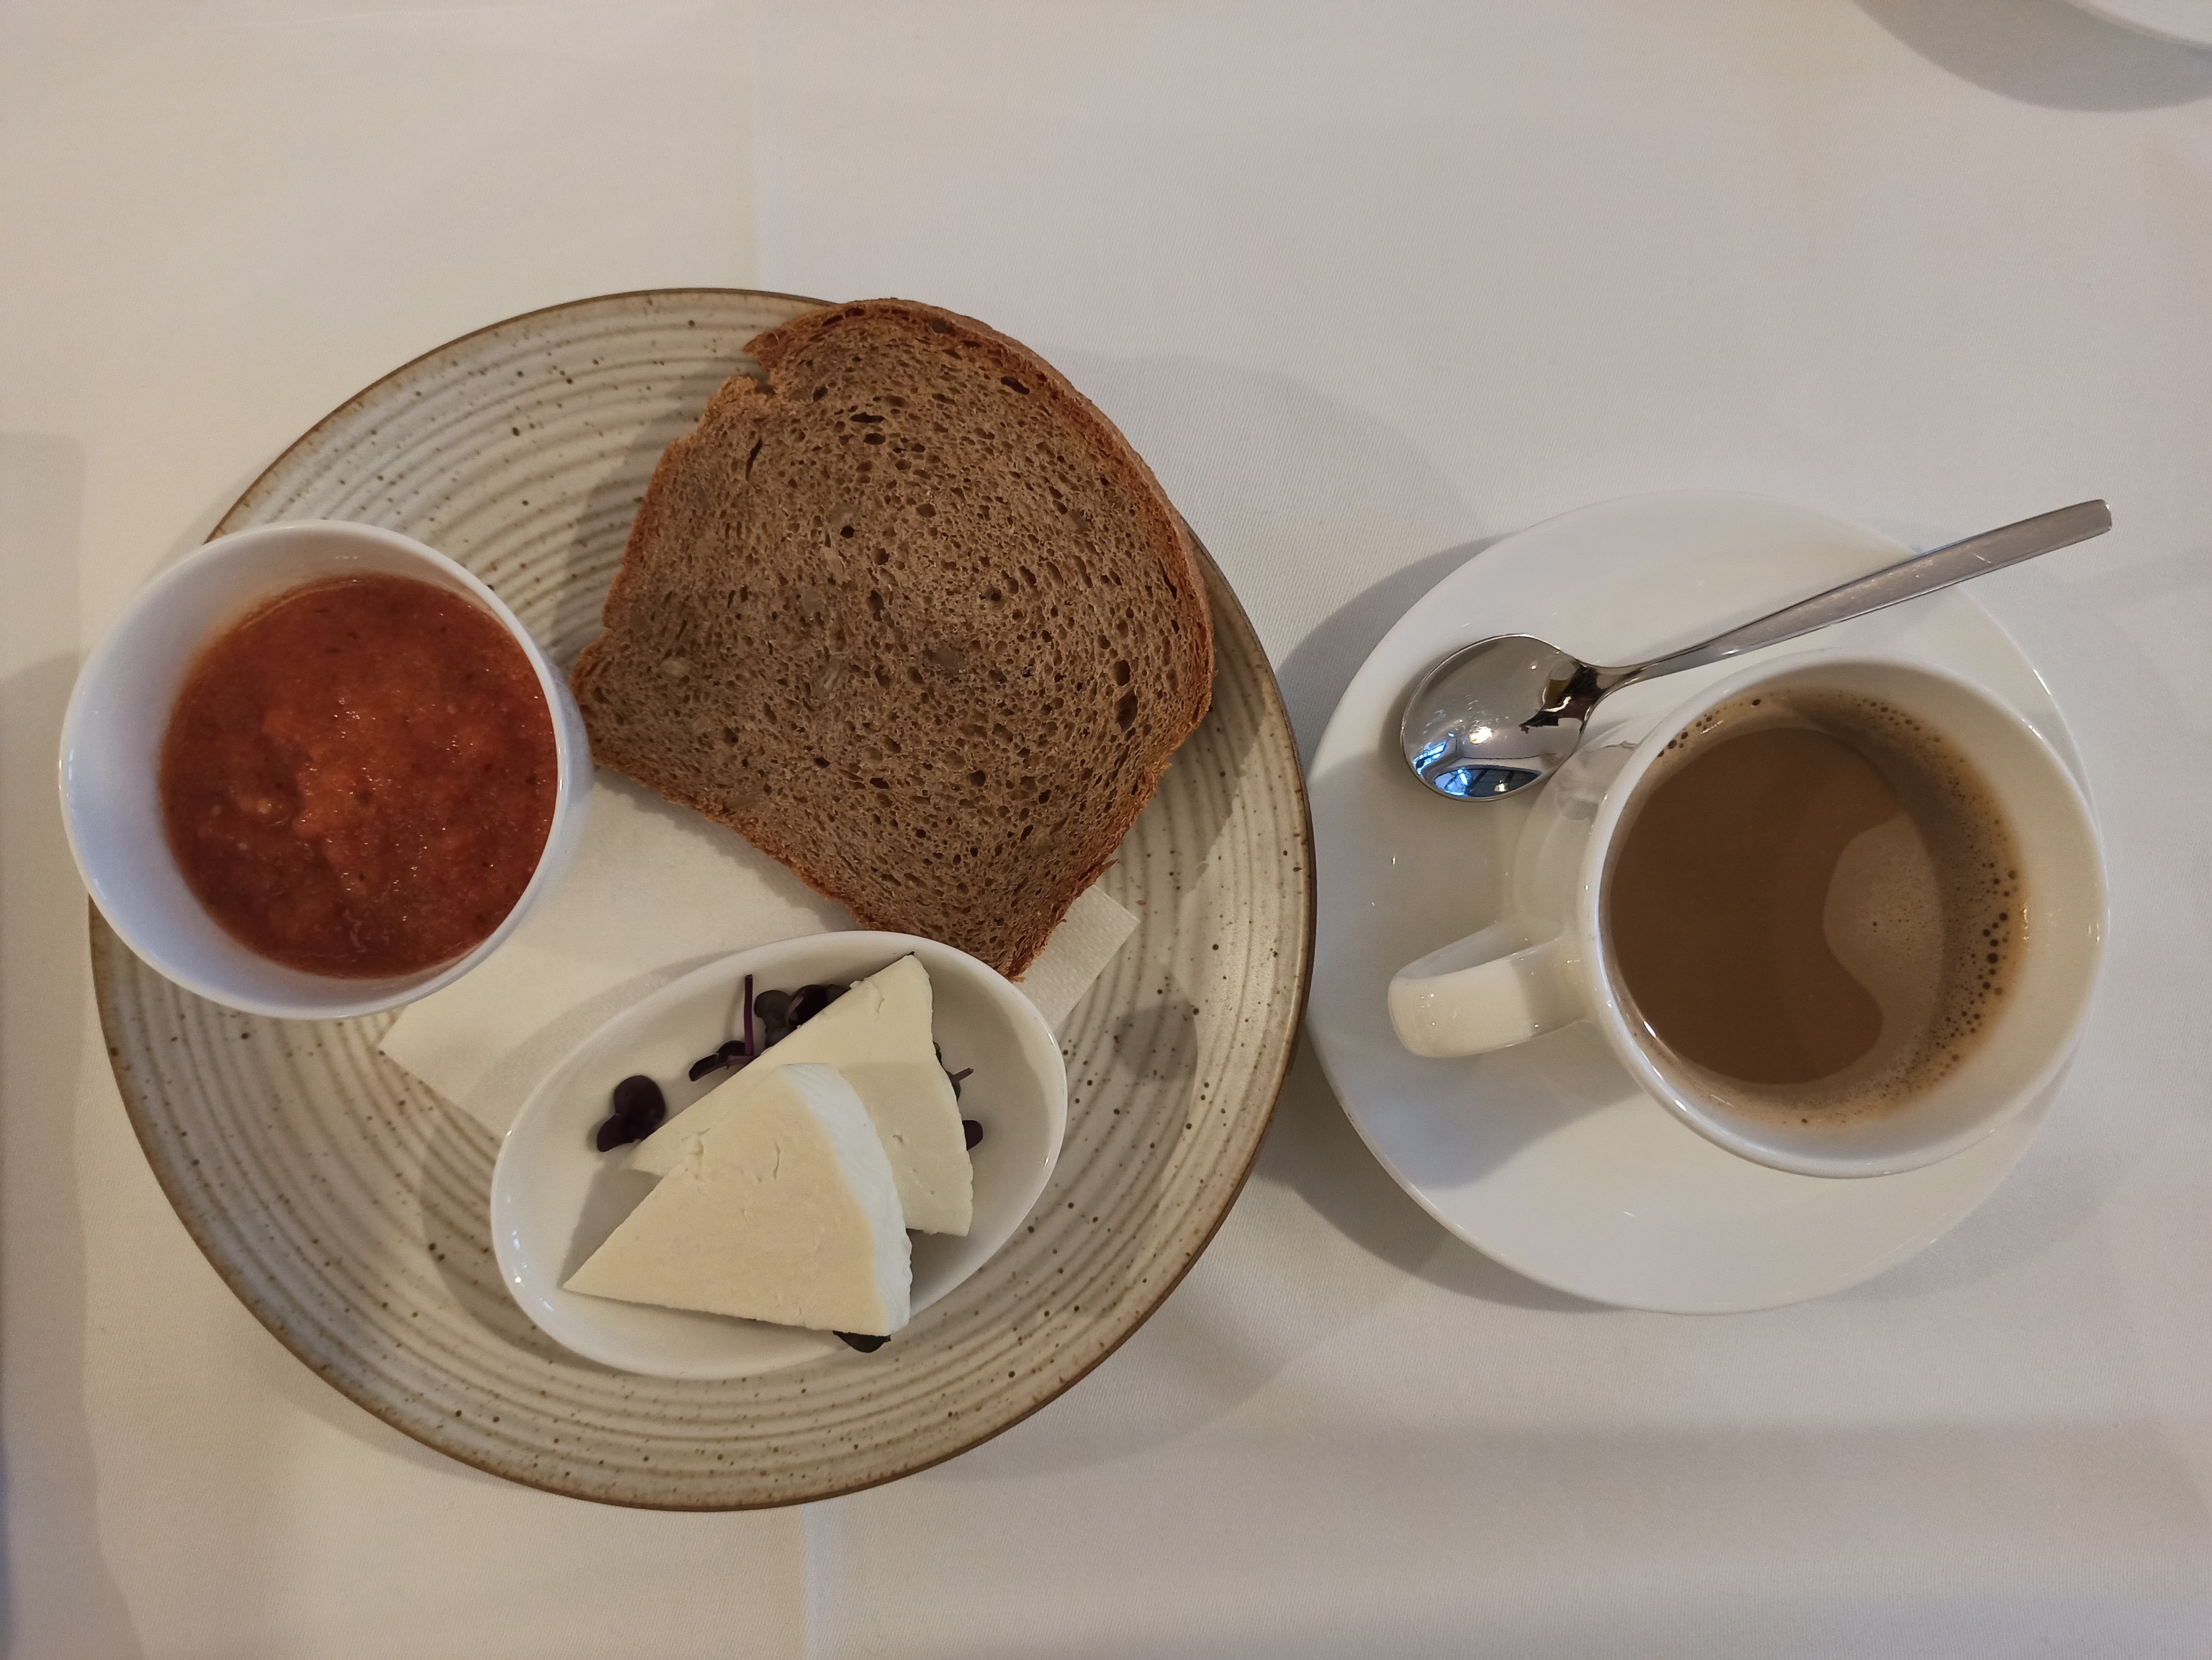 Un ejemplo de desayuno: tomate rallado, queso fresco, pan y café con leche